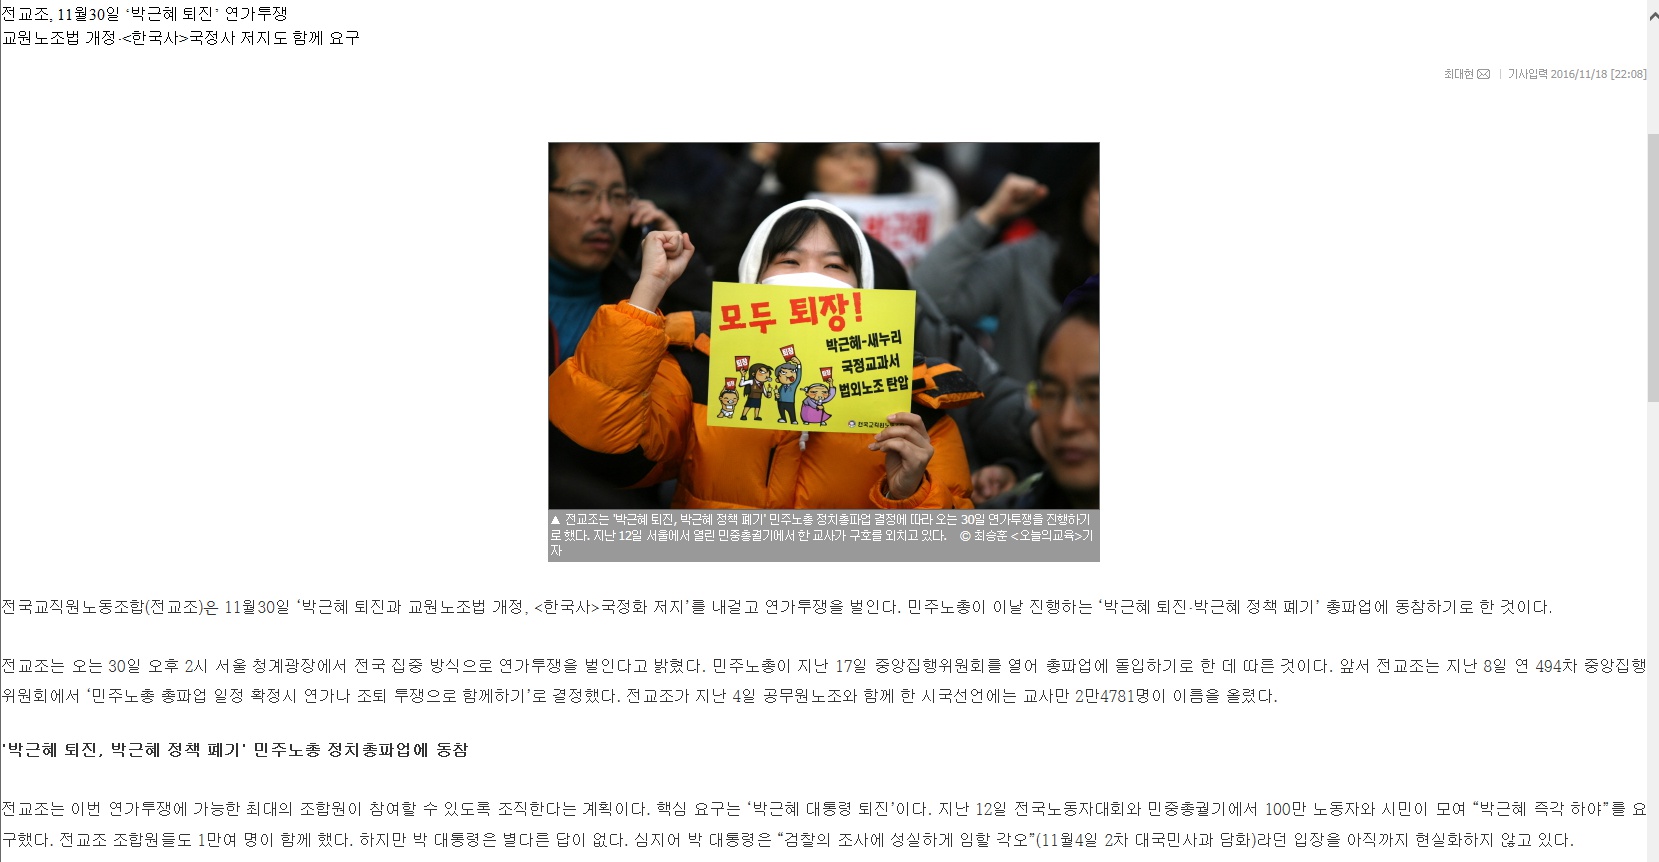 전교조, 11월30일 ‘박근혜 퇴진’ 연가투쟁